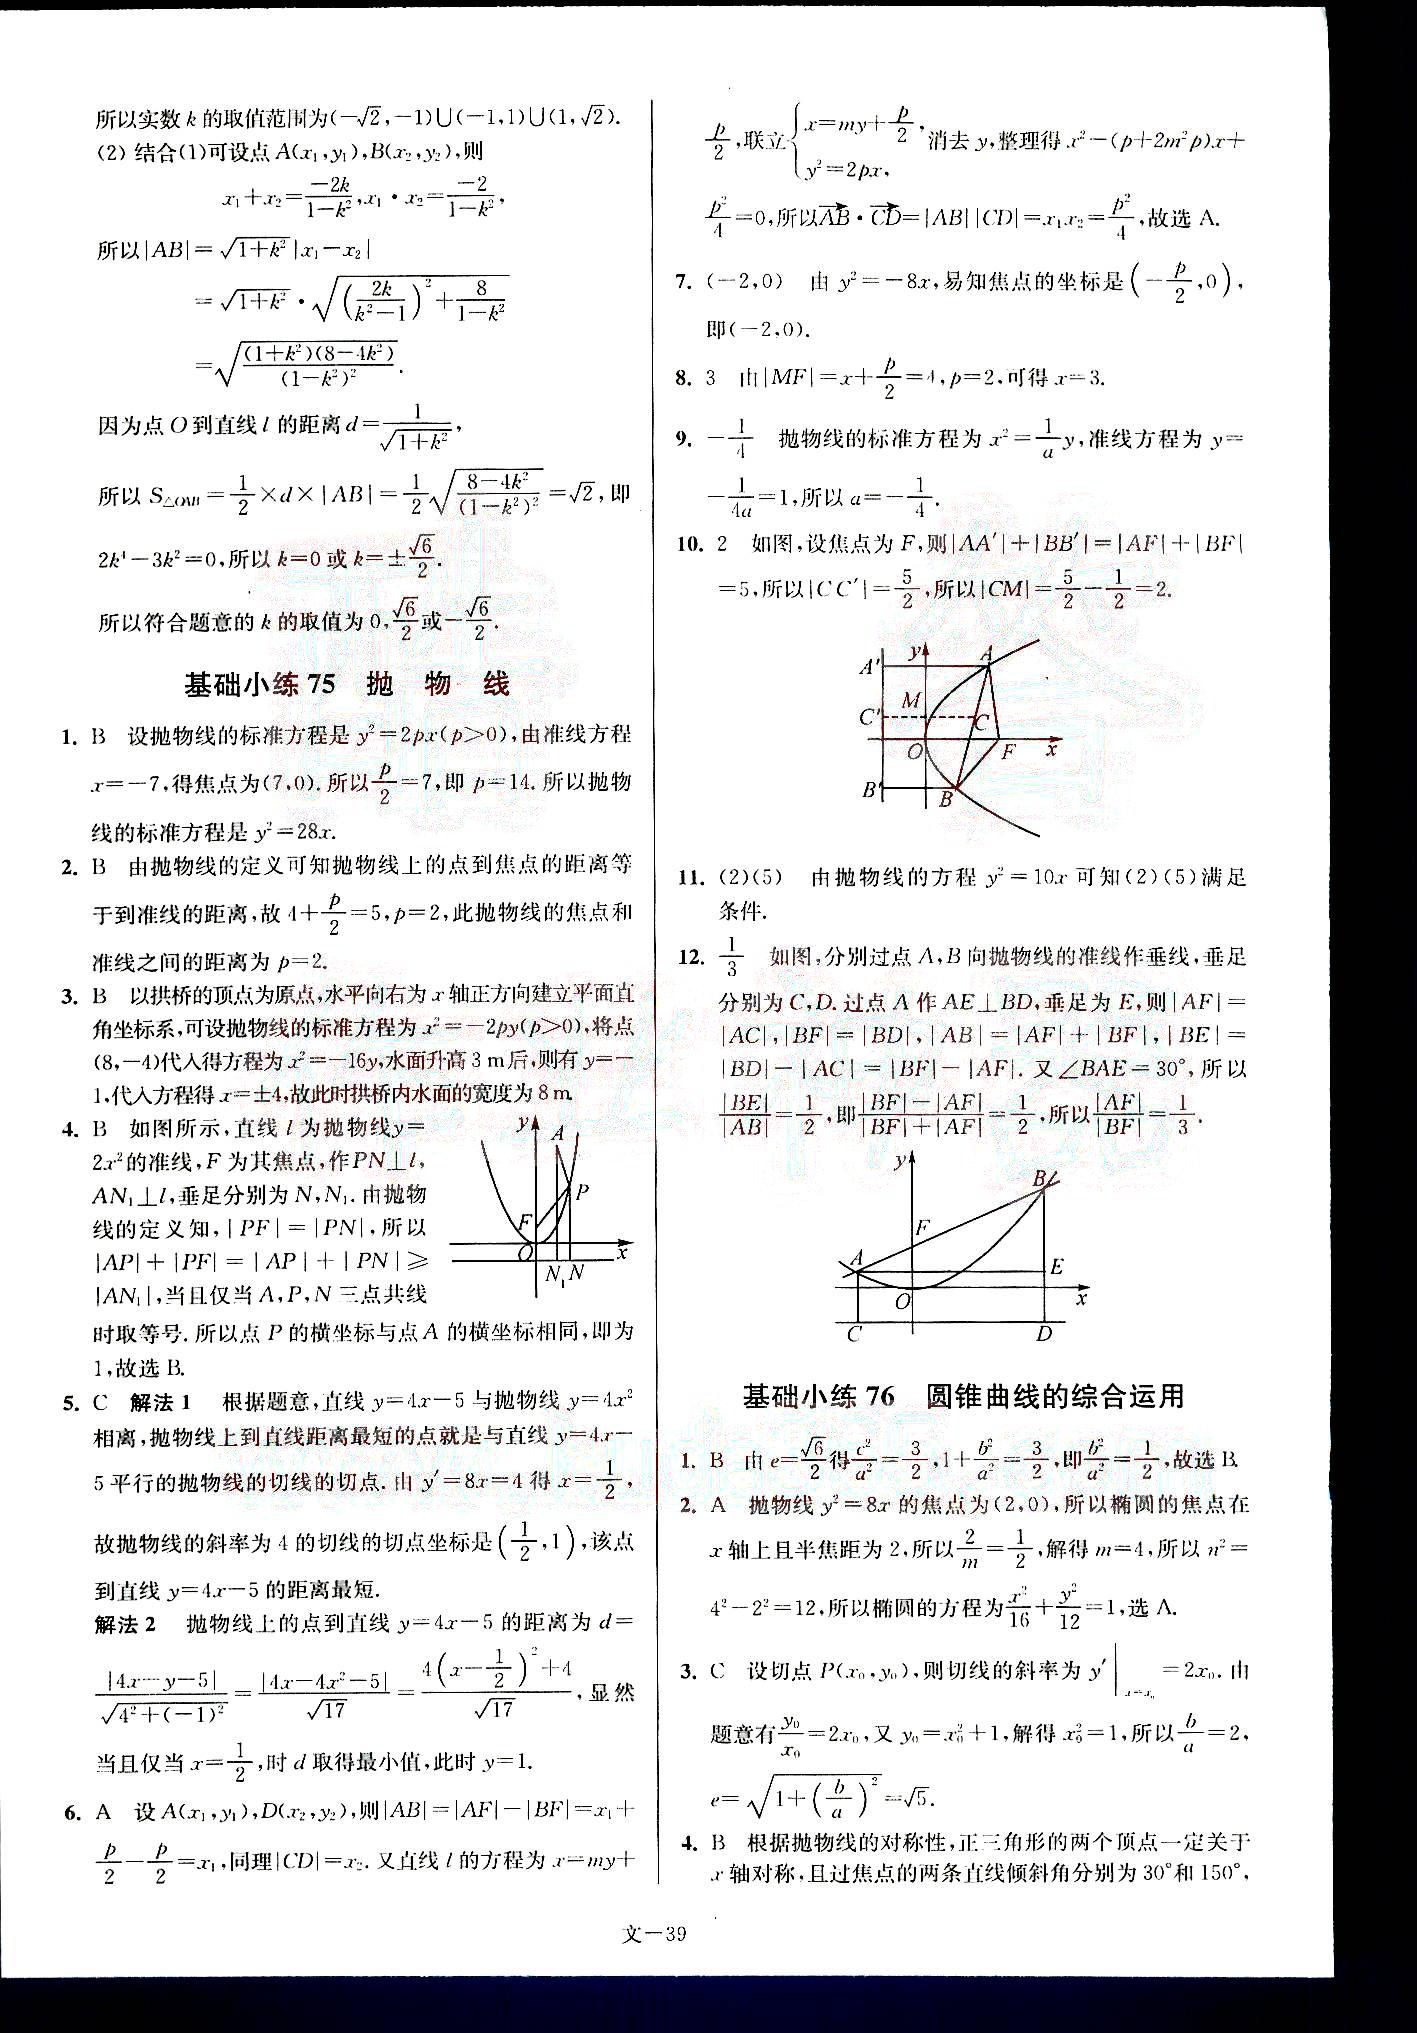 小题狂做-高考数学-文科-最基础篇南京大学出版社 第8部分 [4]